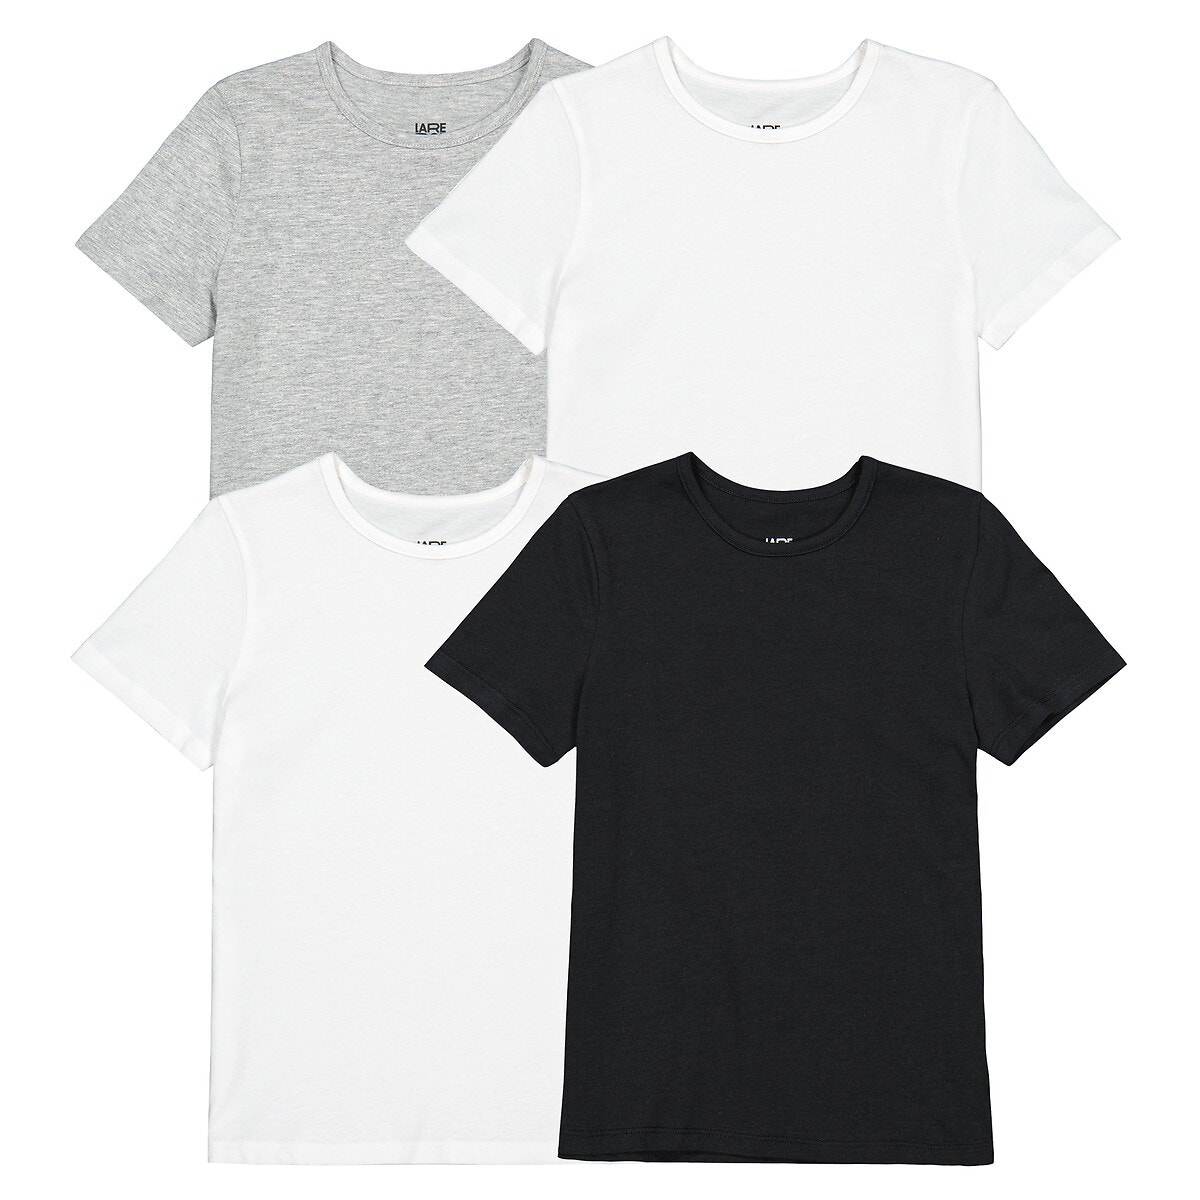 Μόδα > Παιδικά > Αγόρι > Εσώρουχα > T-shirt Σετ 4 μονόχρωμα βαμβακερά T-shirt